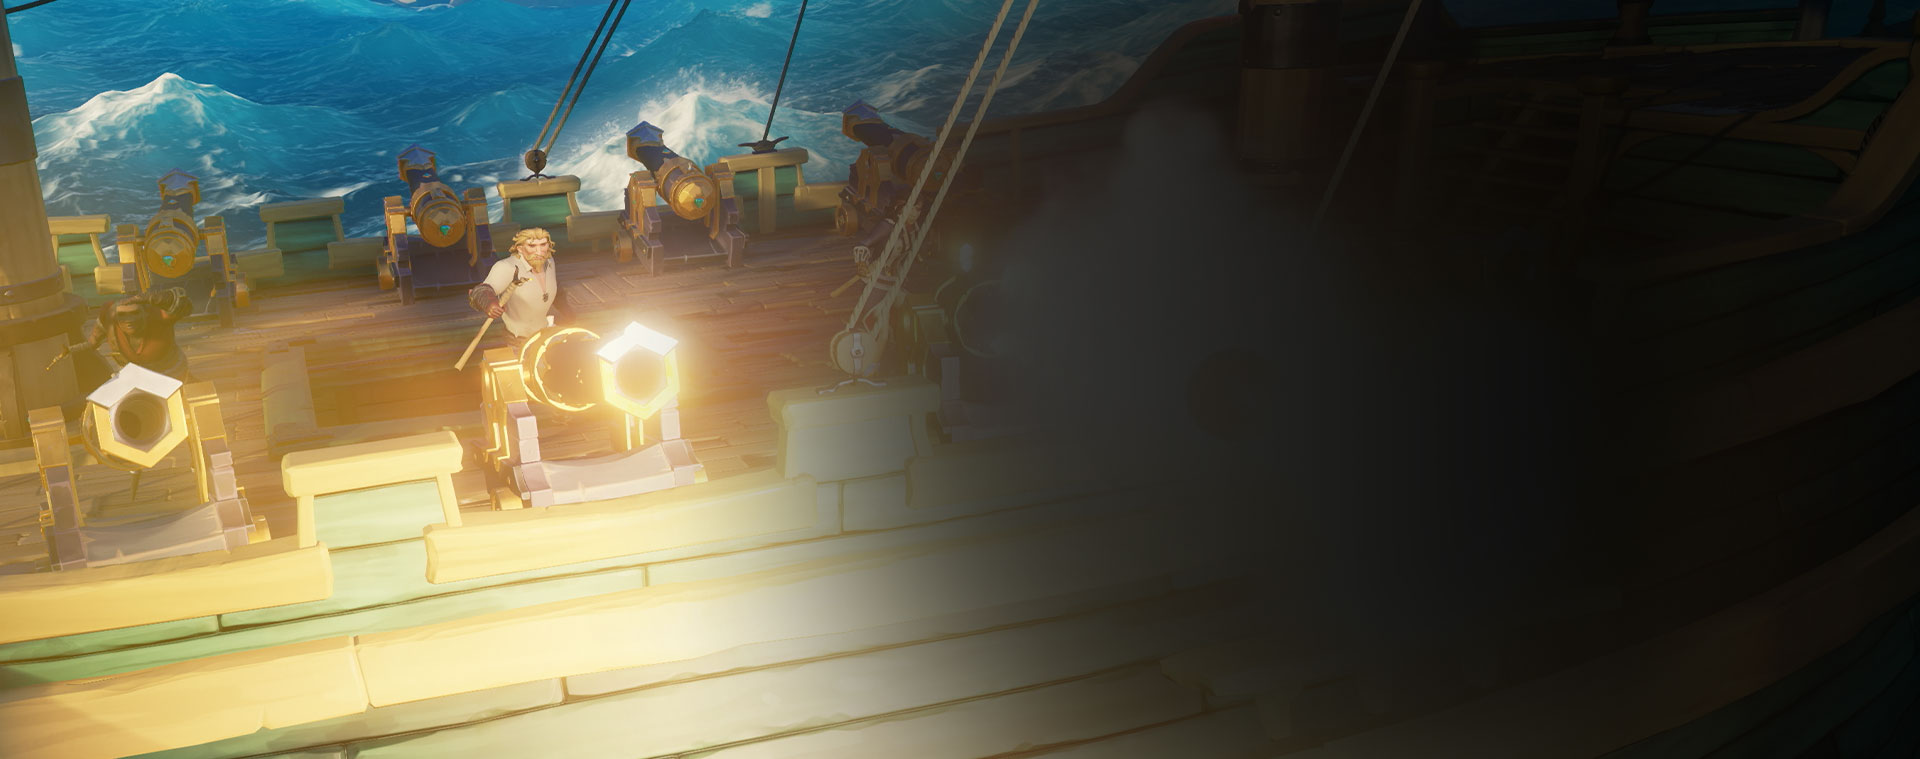 A Sea of Thieves karakterei ágyúznak egy hajóról